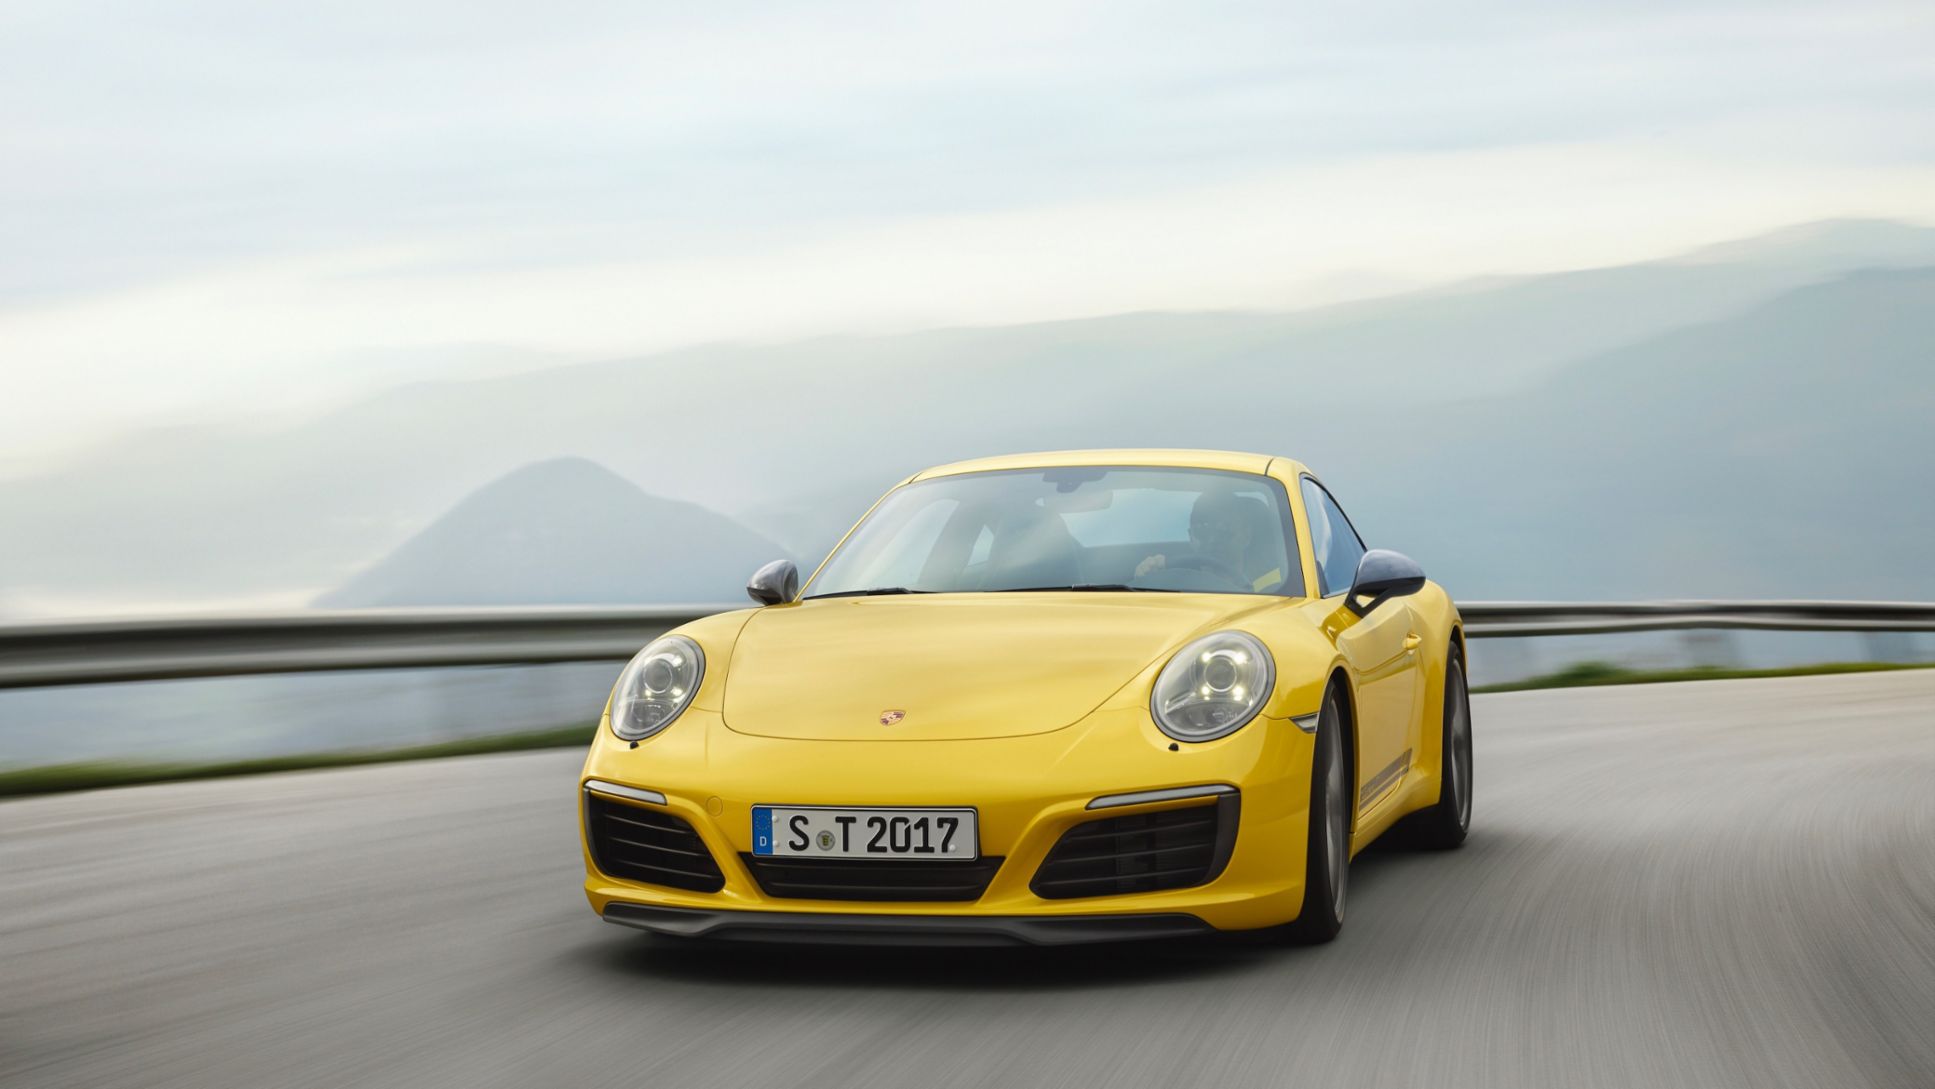 Less is more – the new Porsche 911 Carrera T - Porsche Newsroom